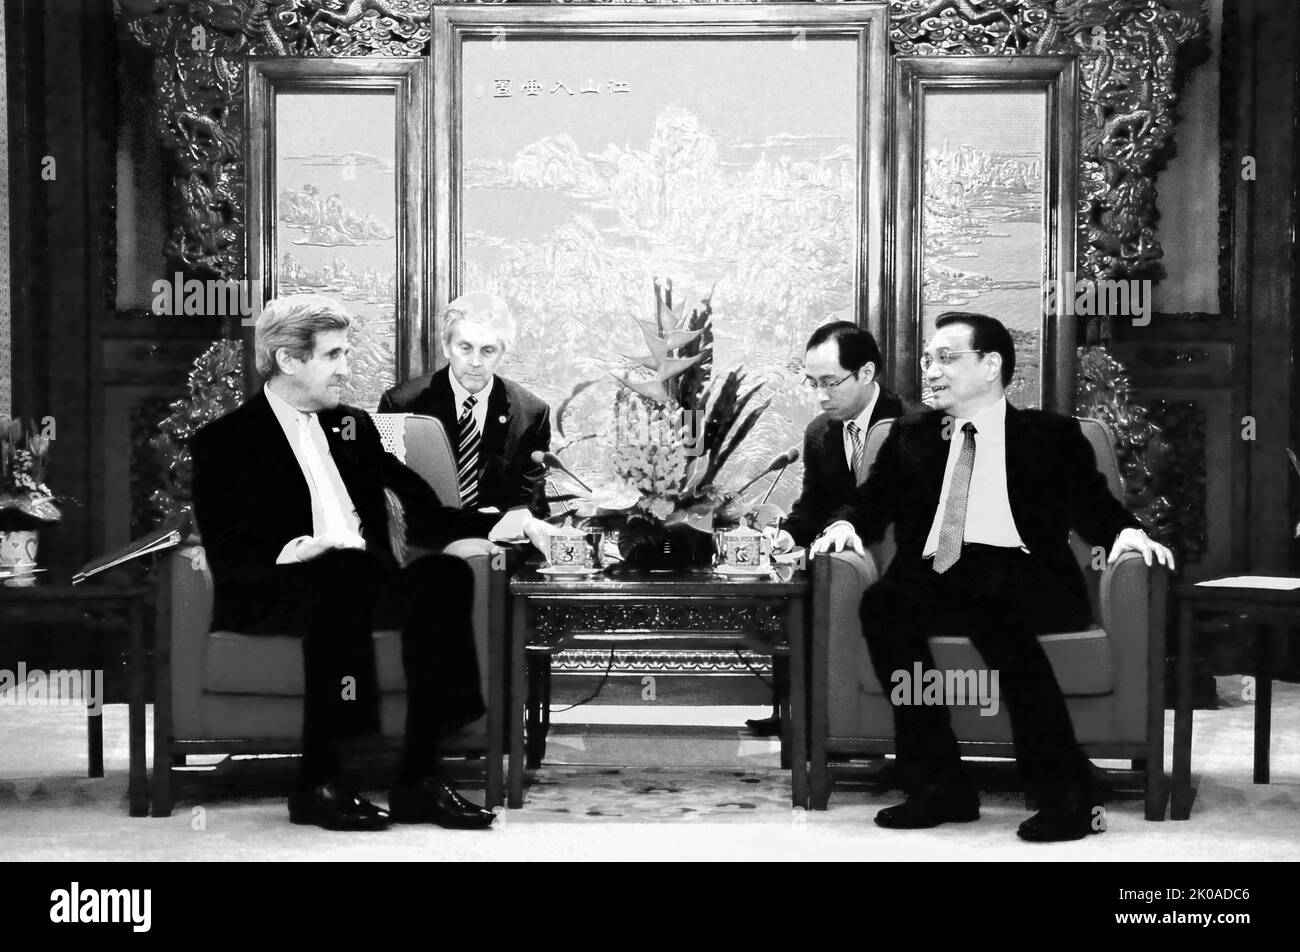 La premiere cinese li Keqiang saluta il Segretario di Stato americano John Kerry in un incontro presso la camera viola di Ziguangge presso il Leadership Compound di Zhongnanhai a Pechino, in Cina, il 14 febbraio 2014 Foto Stock